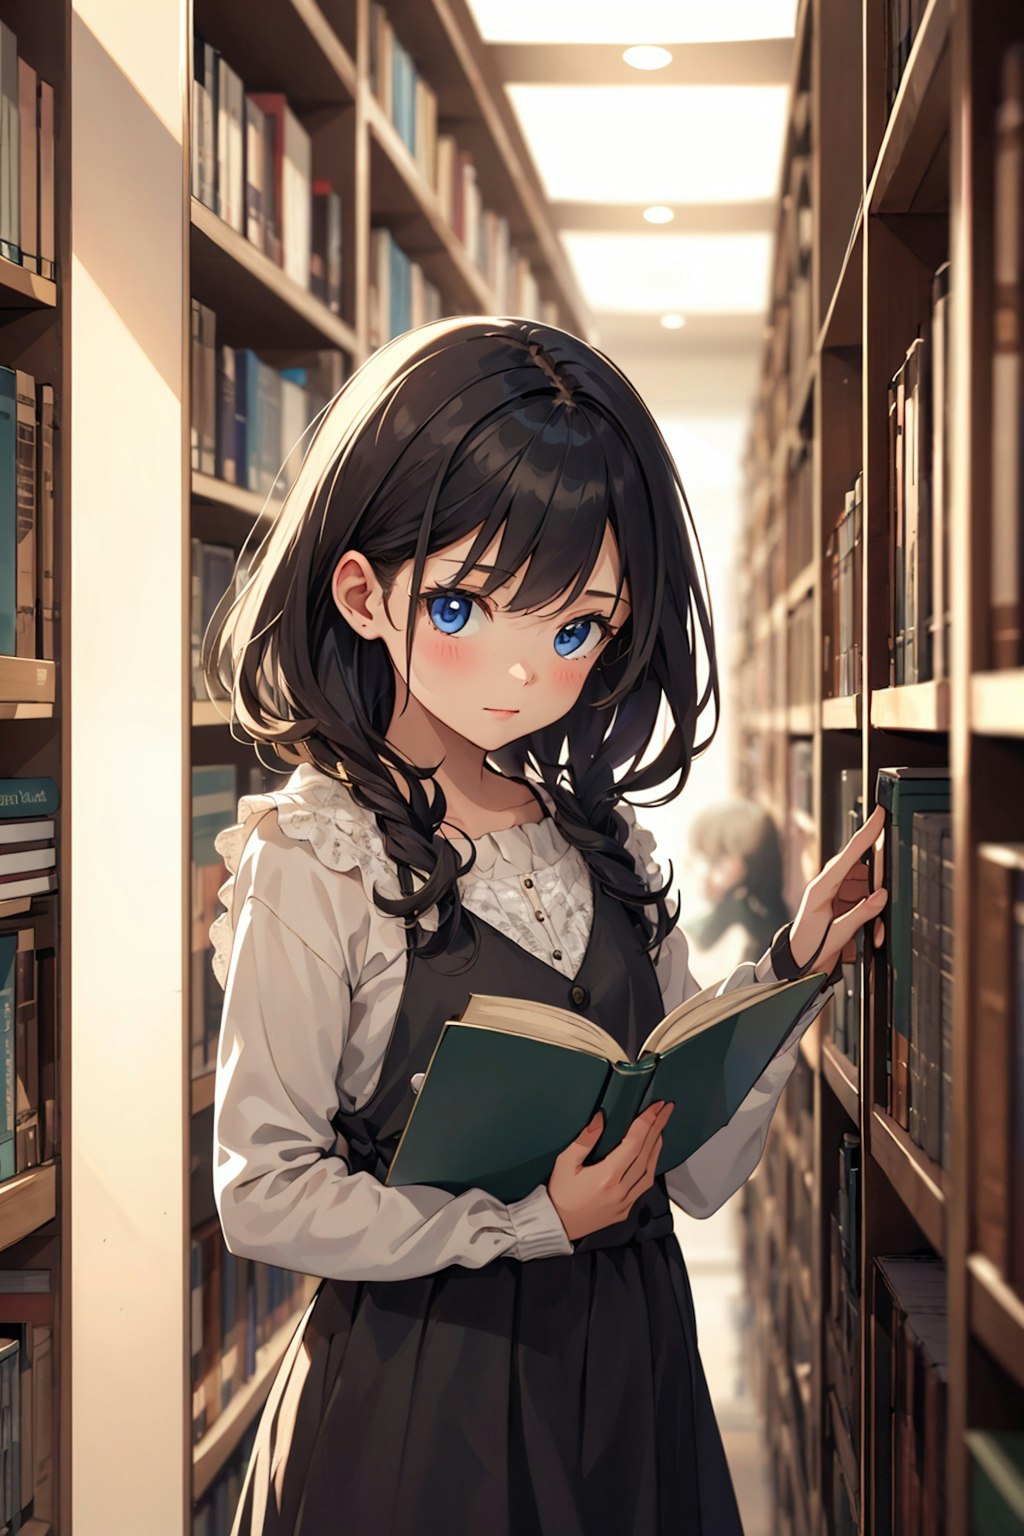 図書室の少女